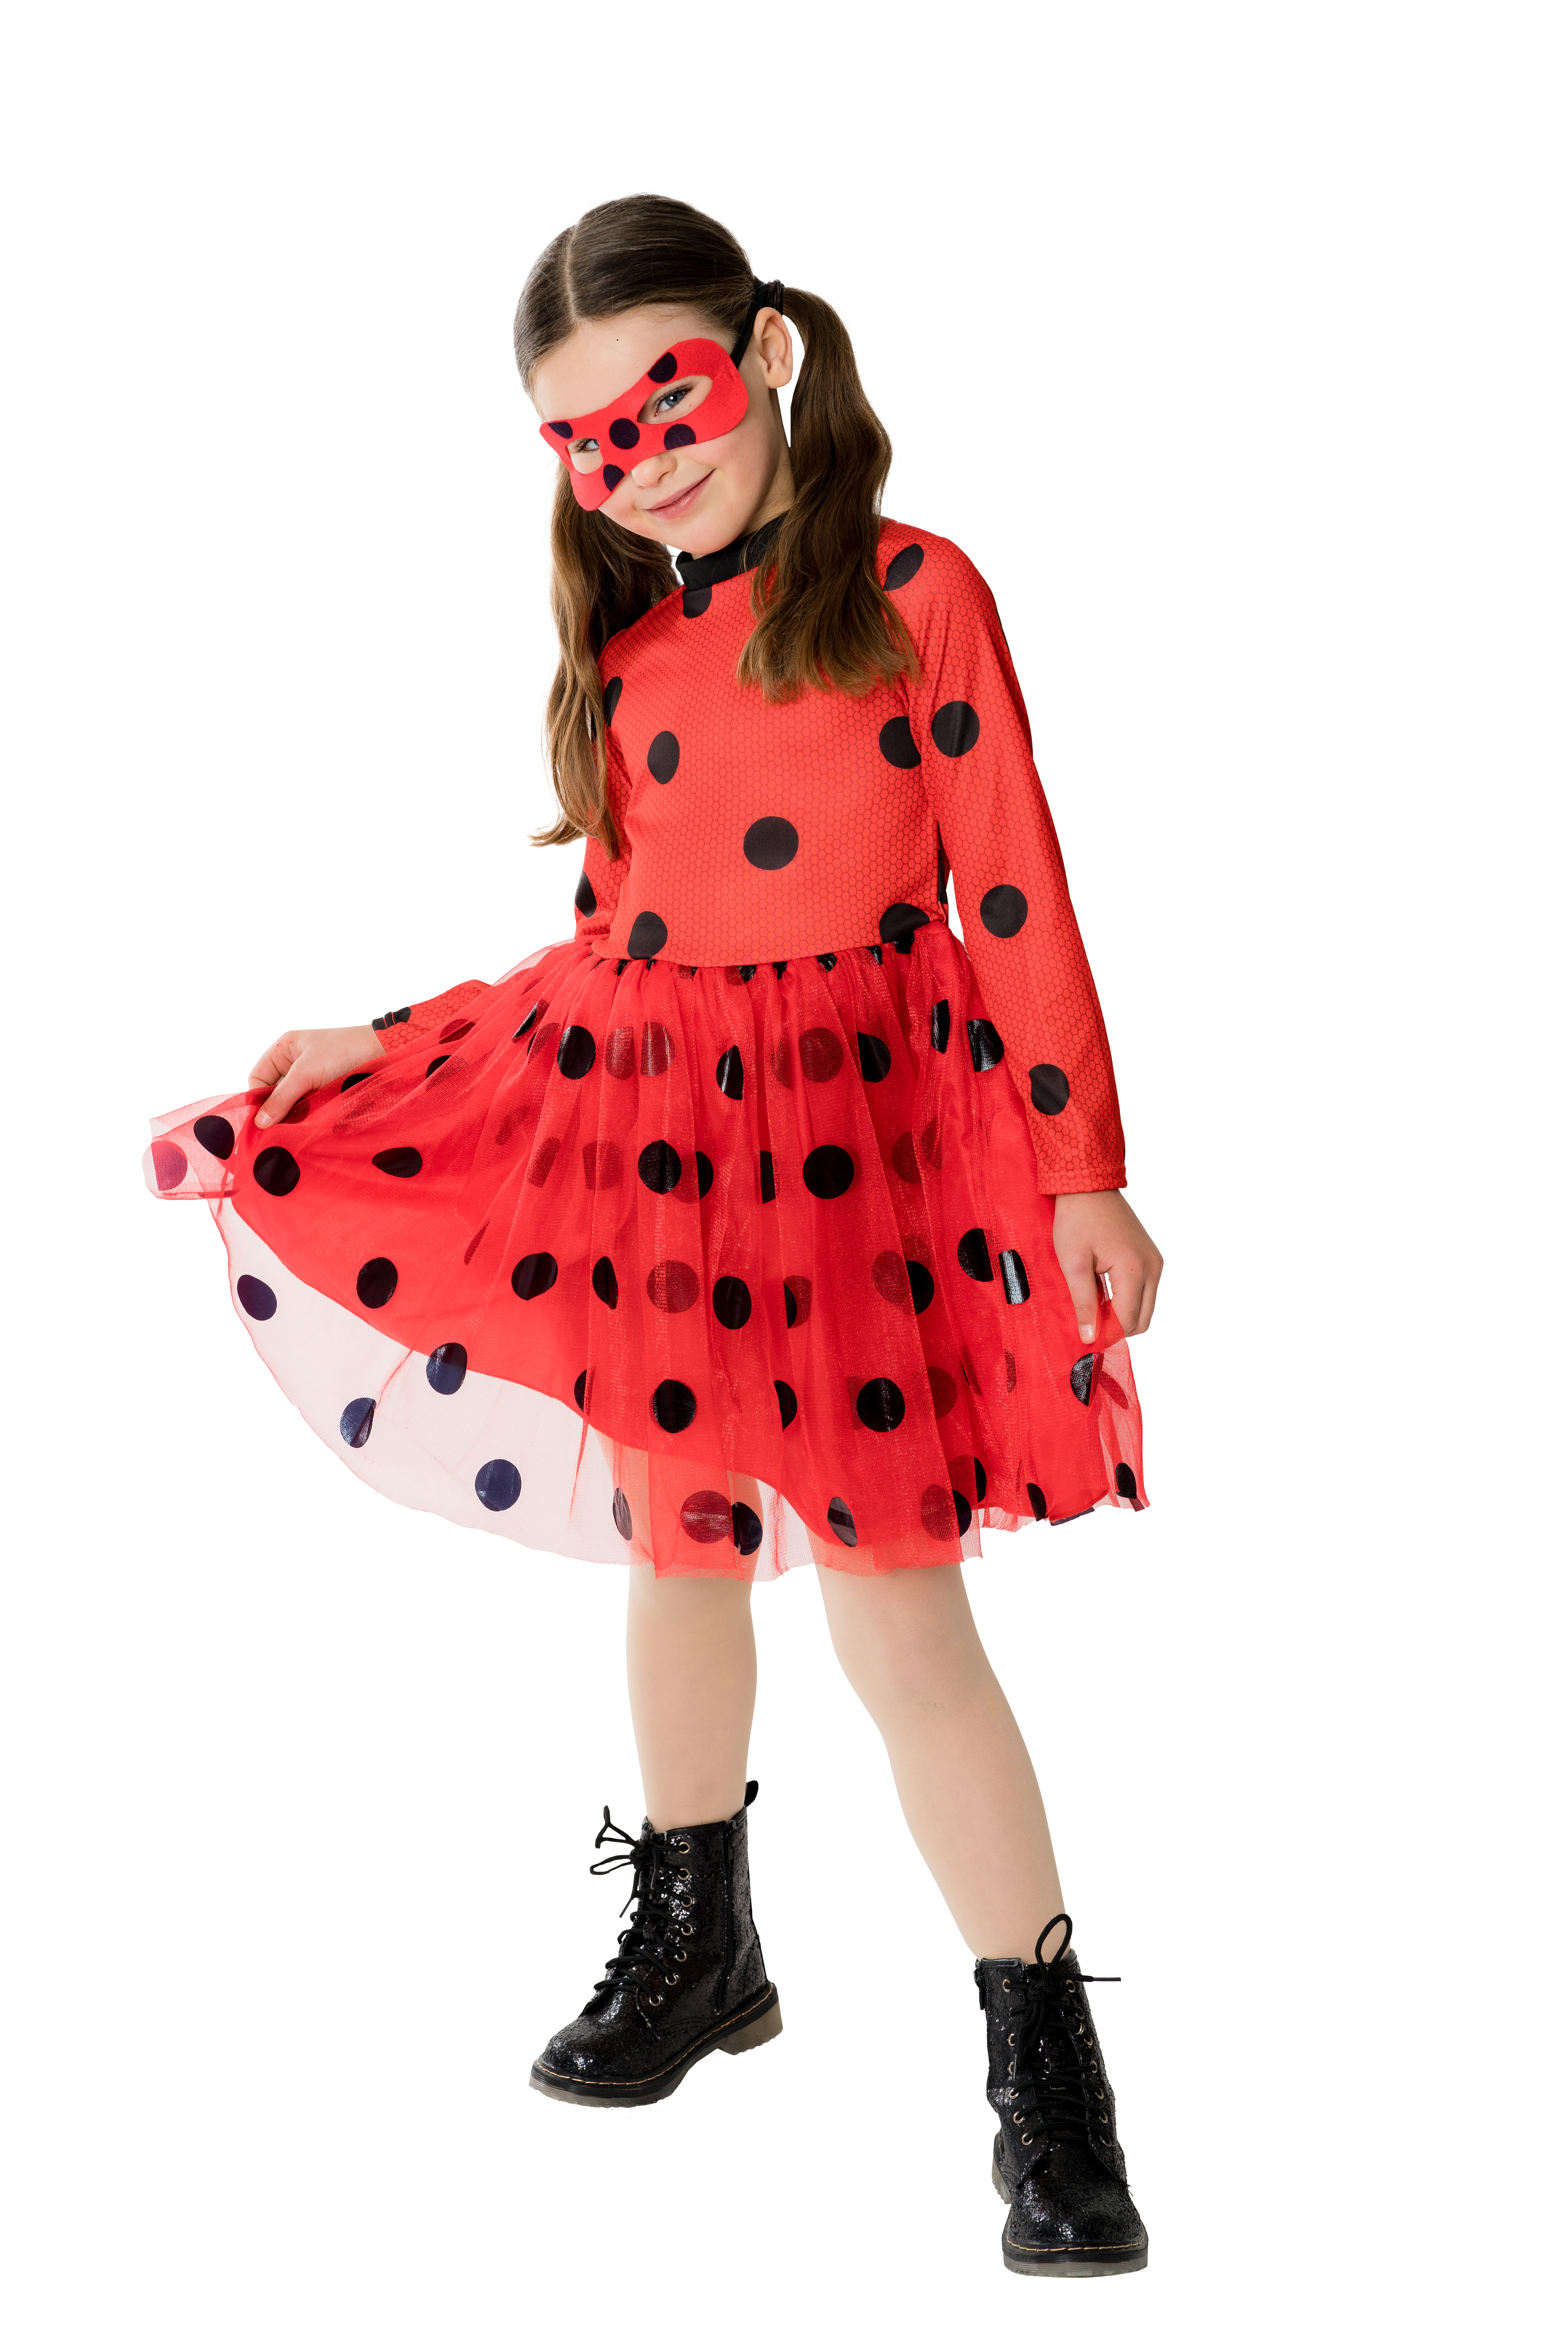 Rubies 300834 Miraculous Ladybug Tutu Kleid, Kinder Kostüm, Gr. 3 - 10 Jahre